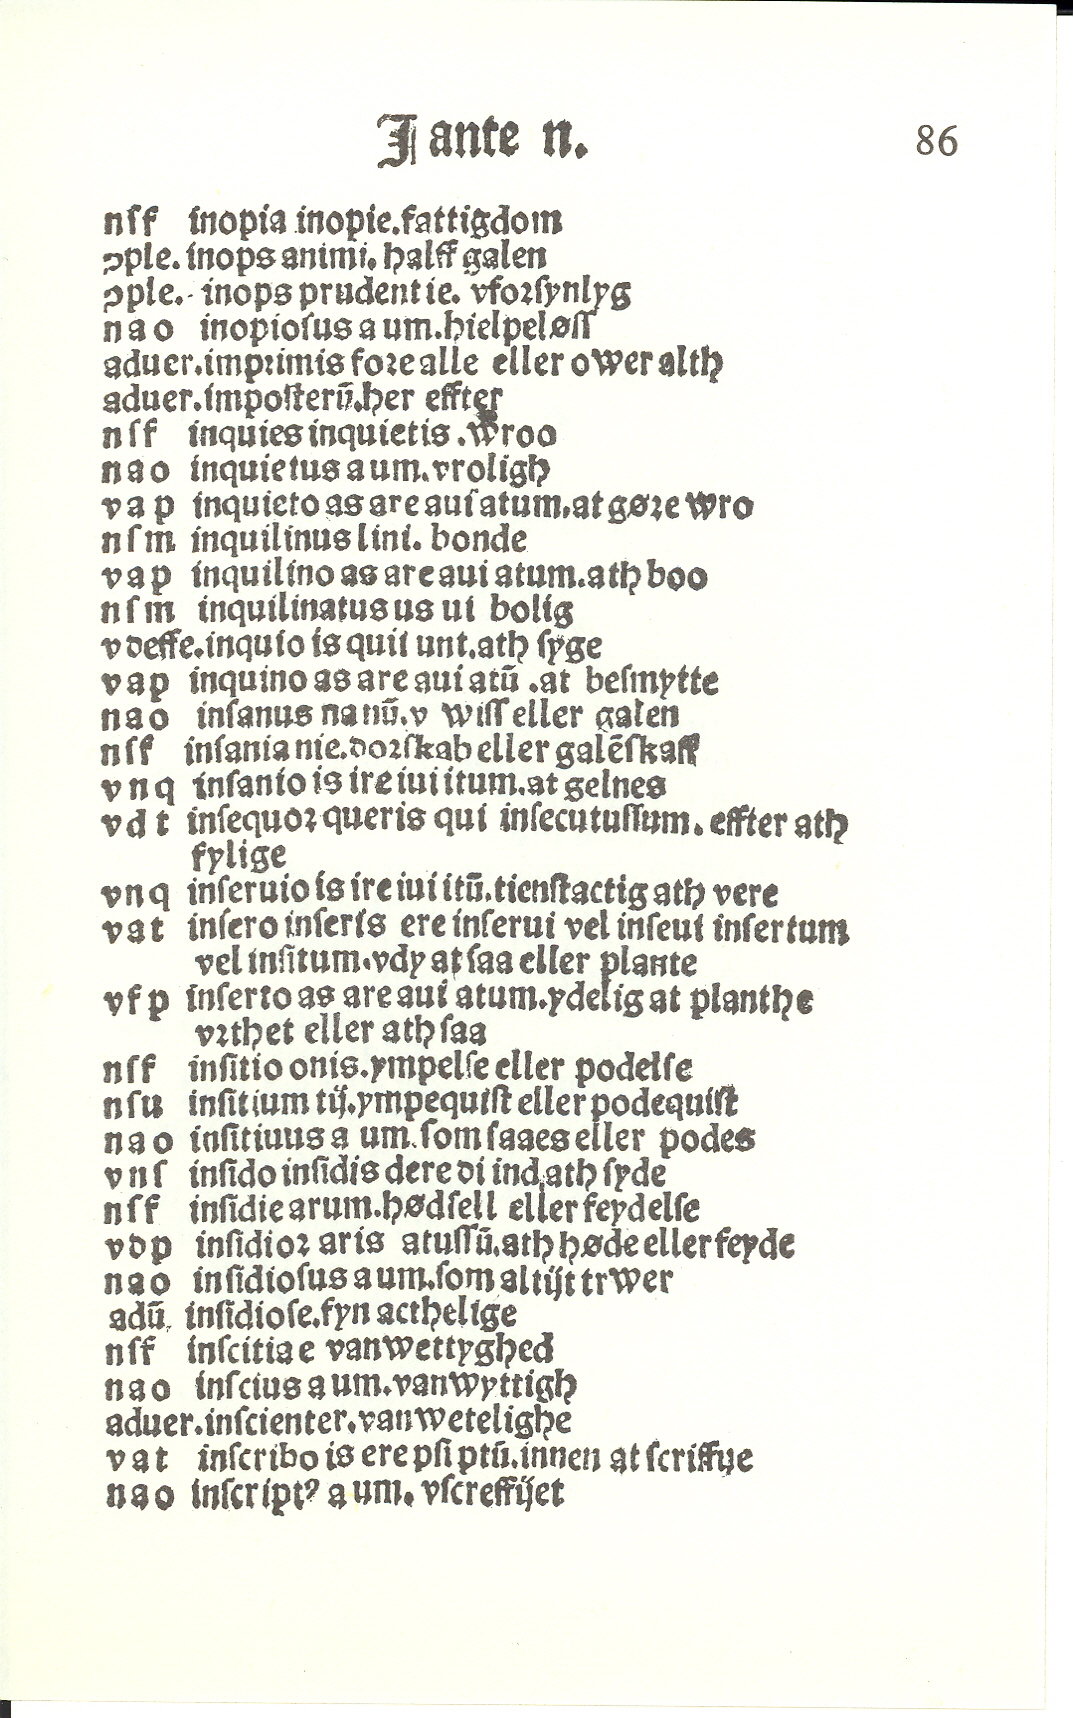 Pedersen 1510, Side: 169